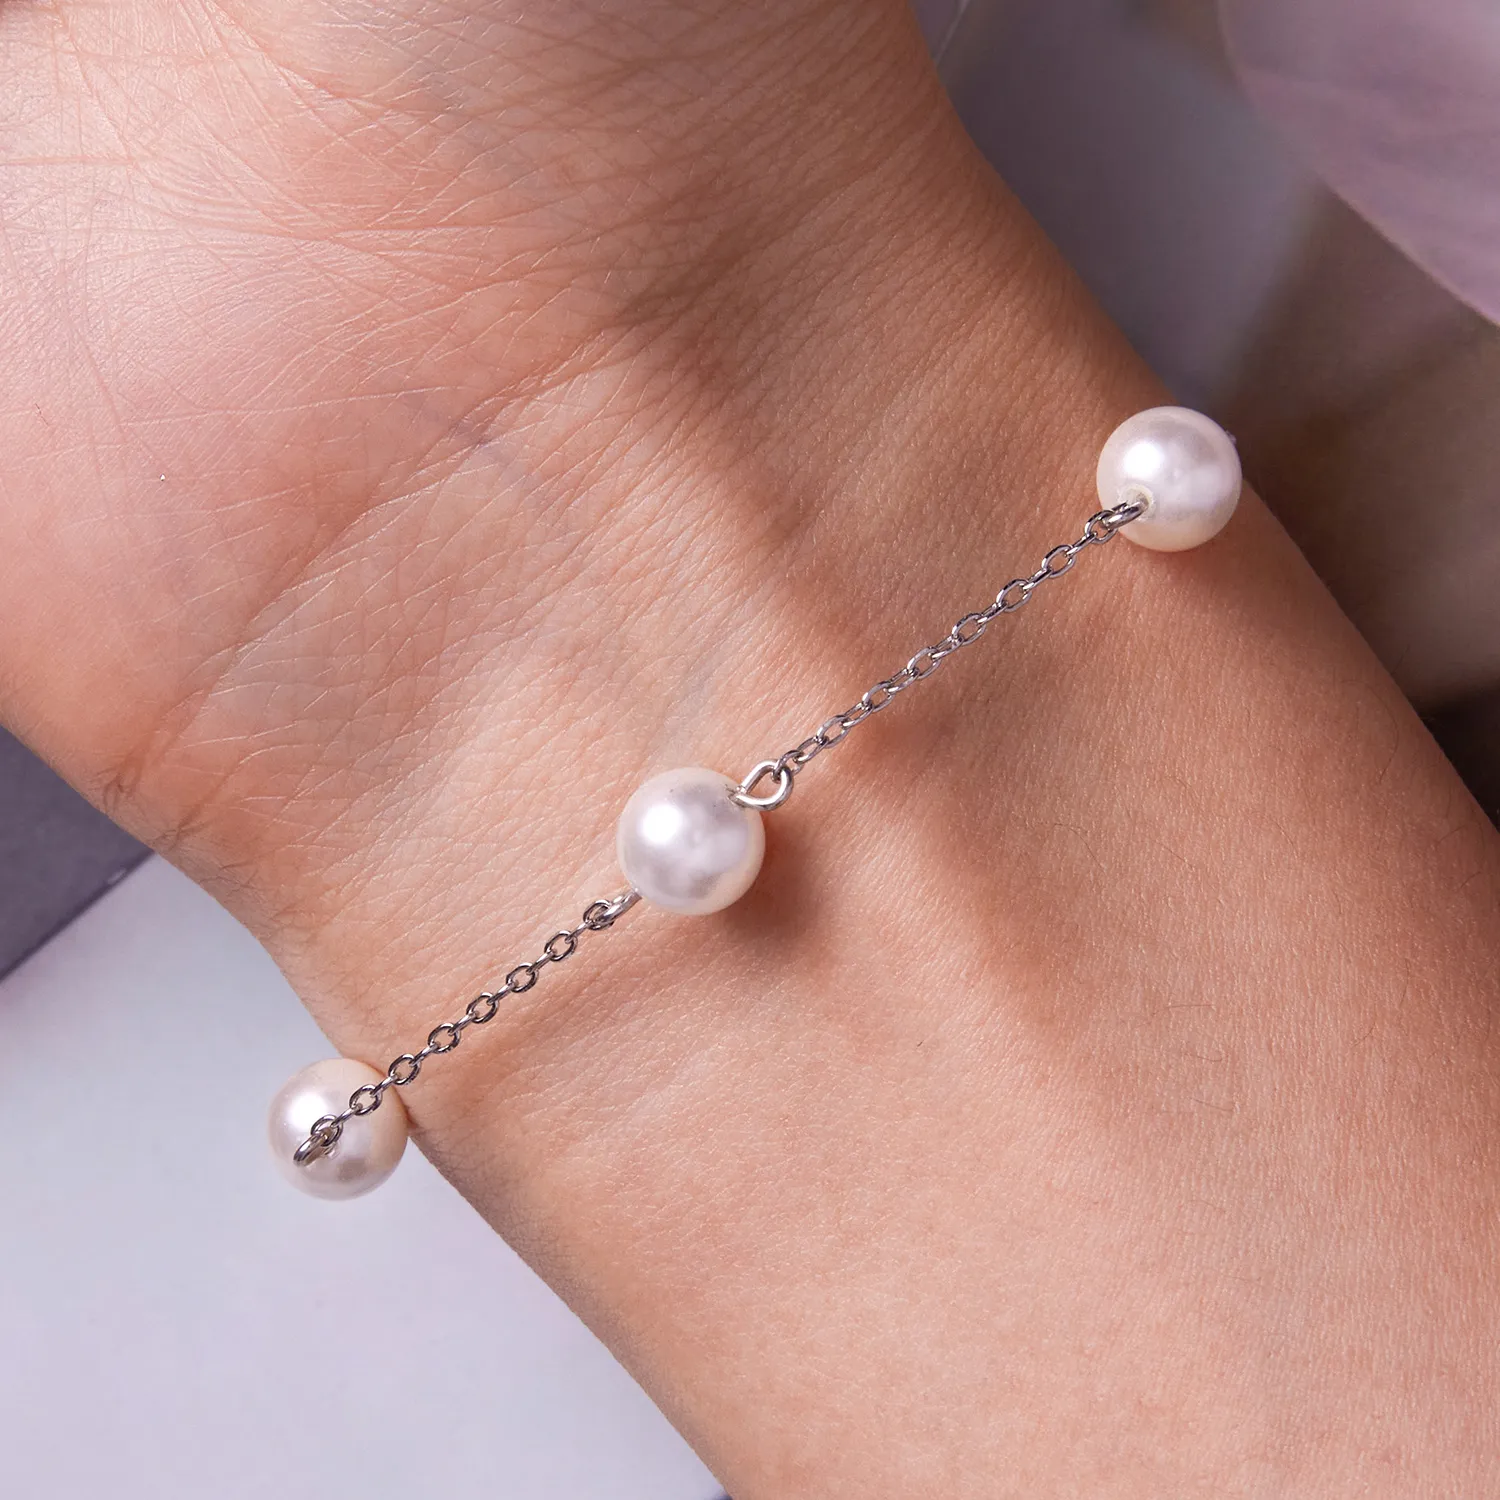 Brățară cu perle în stil Pandora - BSB090